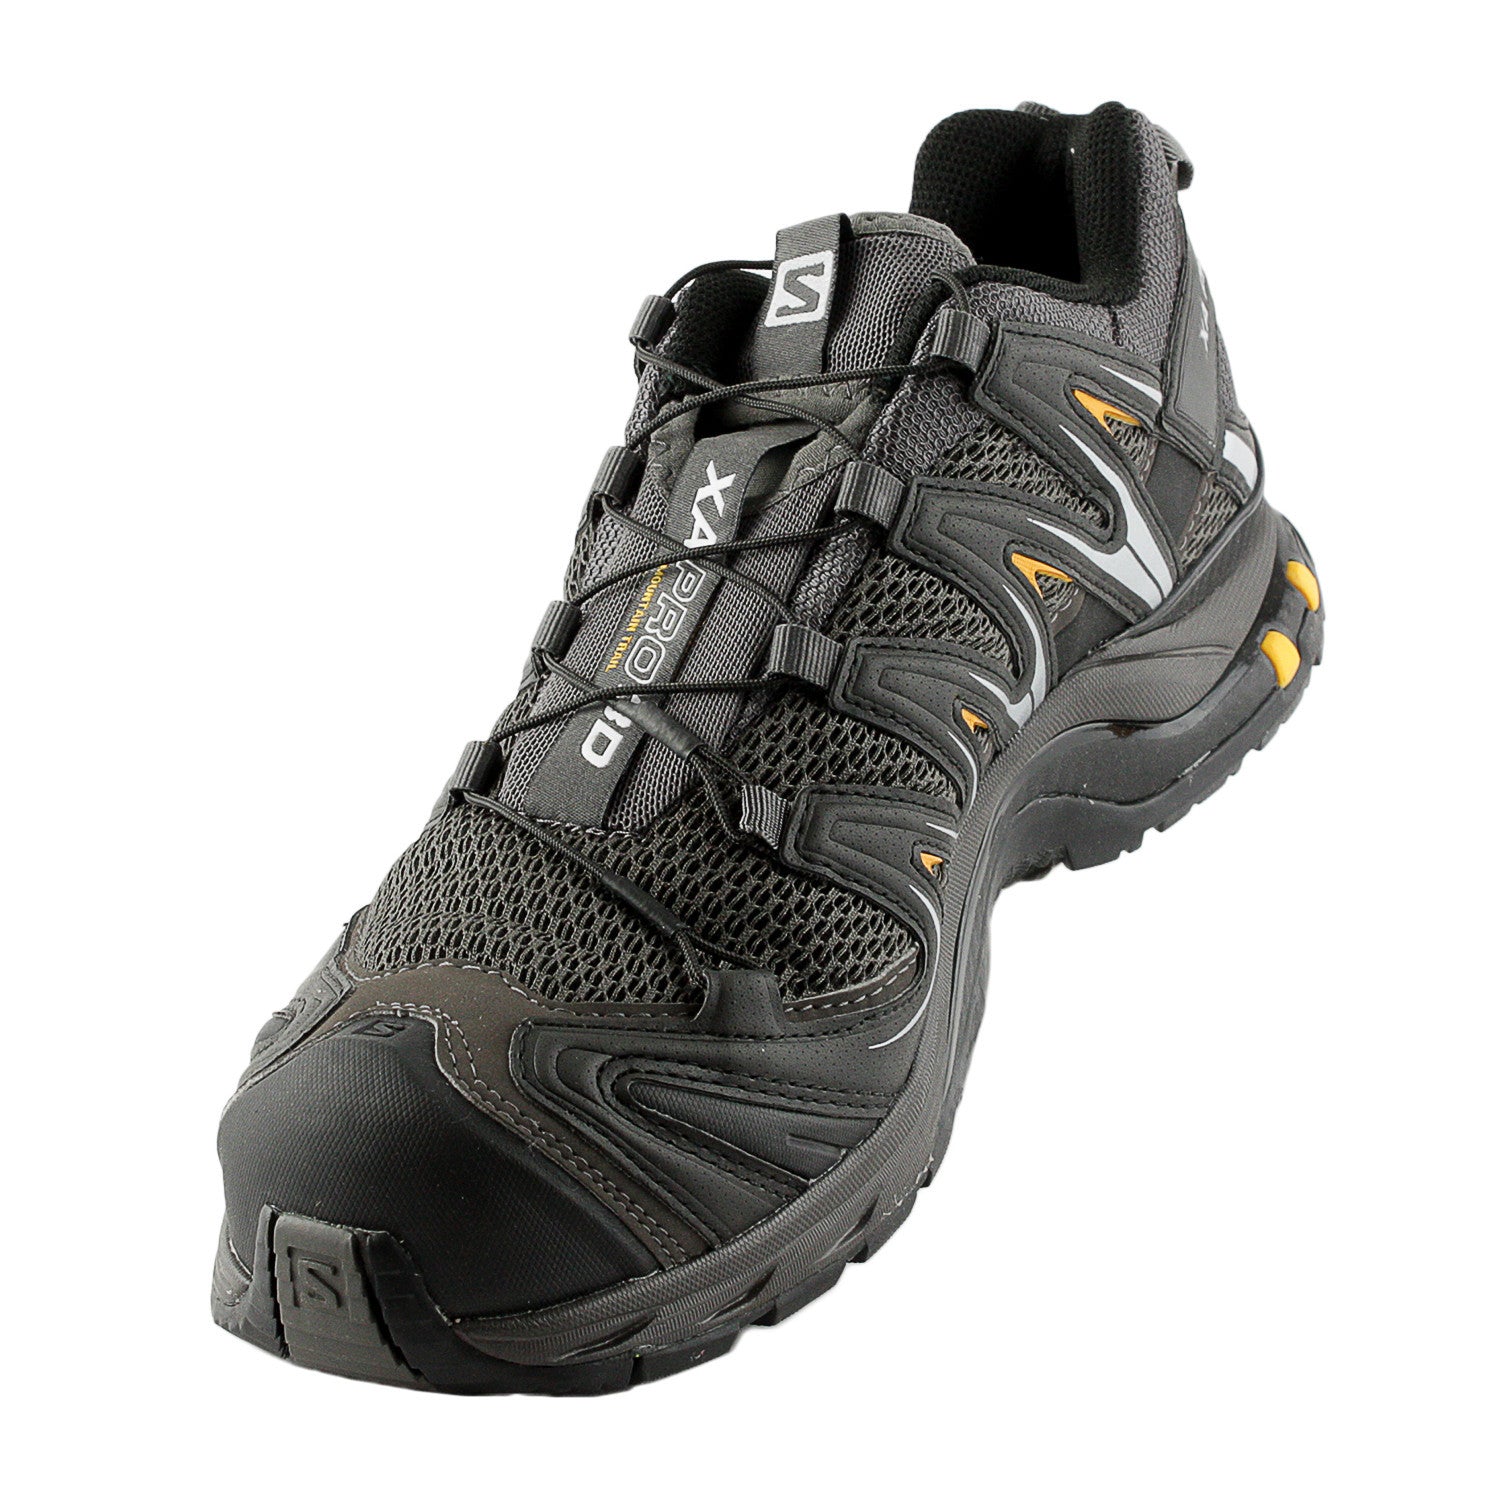 Men's Trail Running Shoes - Shop Salomon